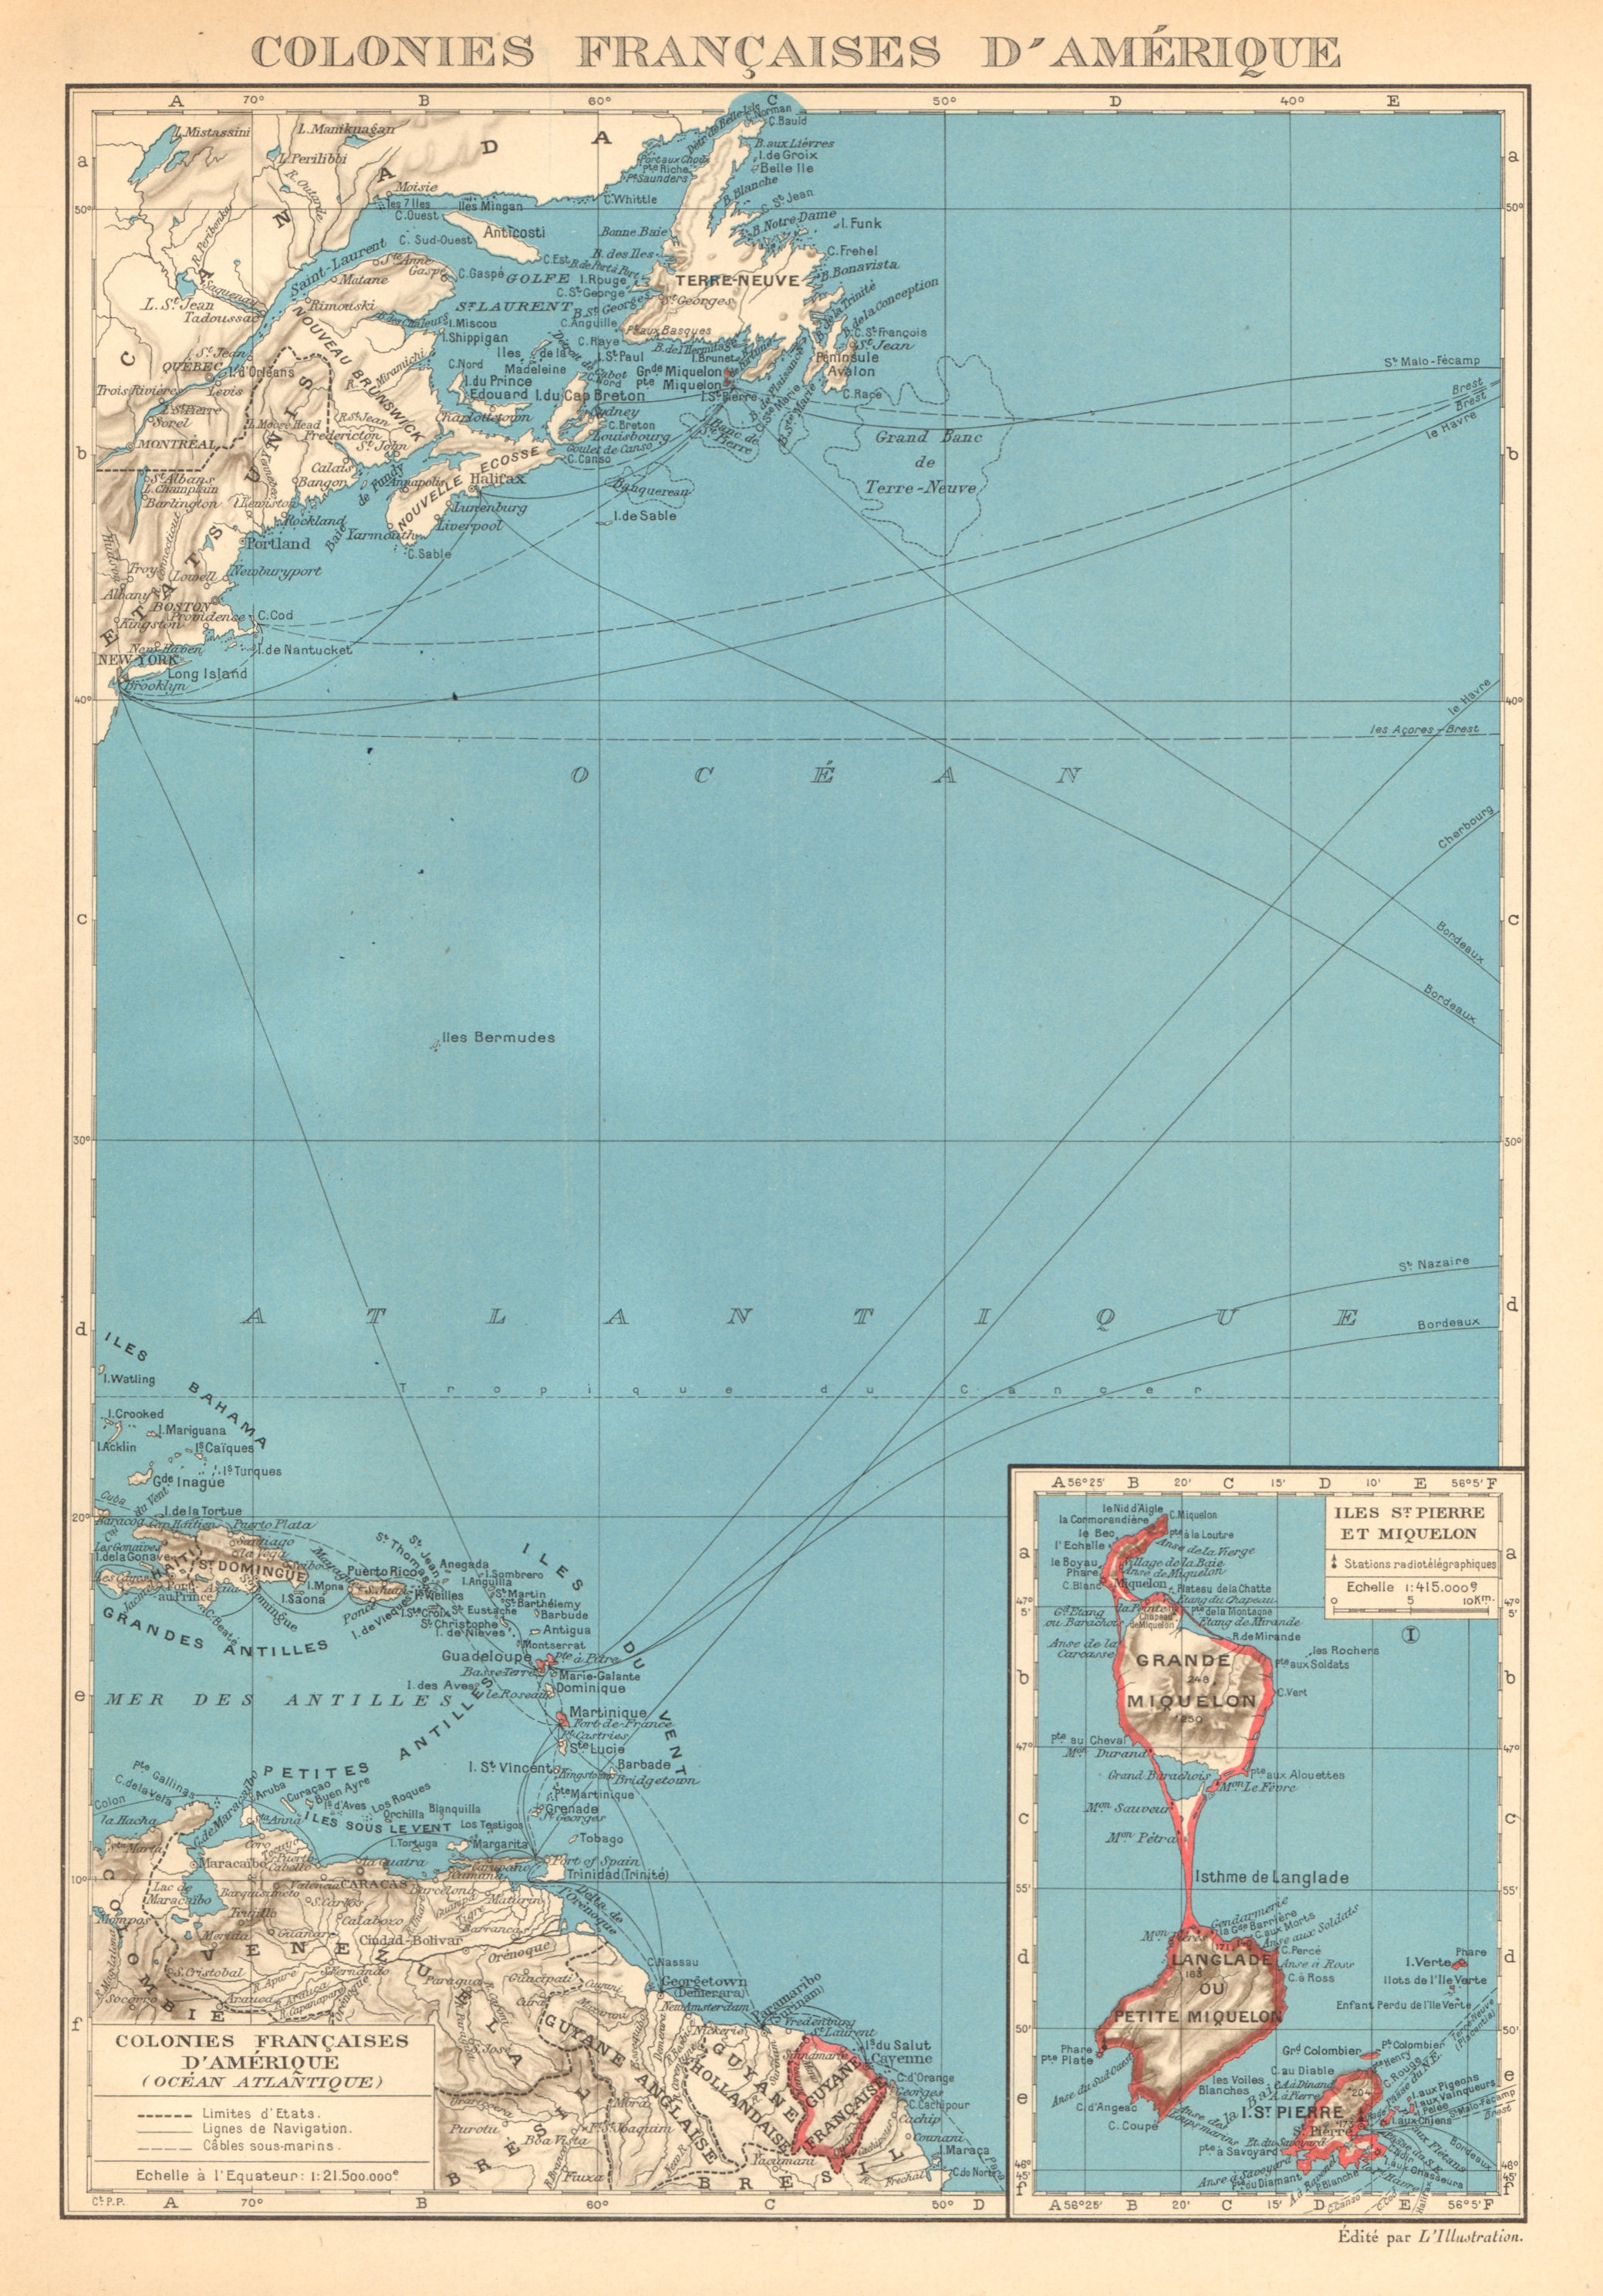 Associate Product FRENCH AMERICAS. Colonies Françaises d' Amerique. St-Pierre et Miquelon 1938 map